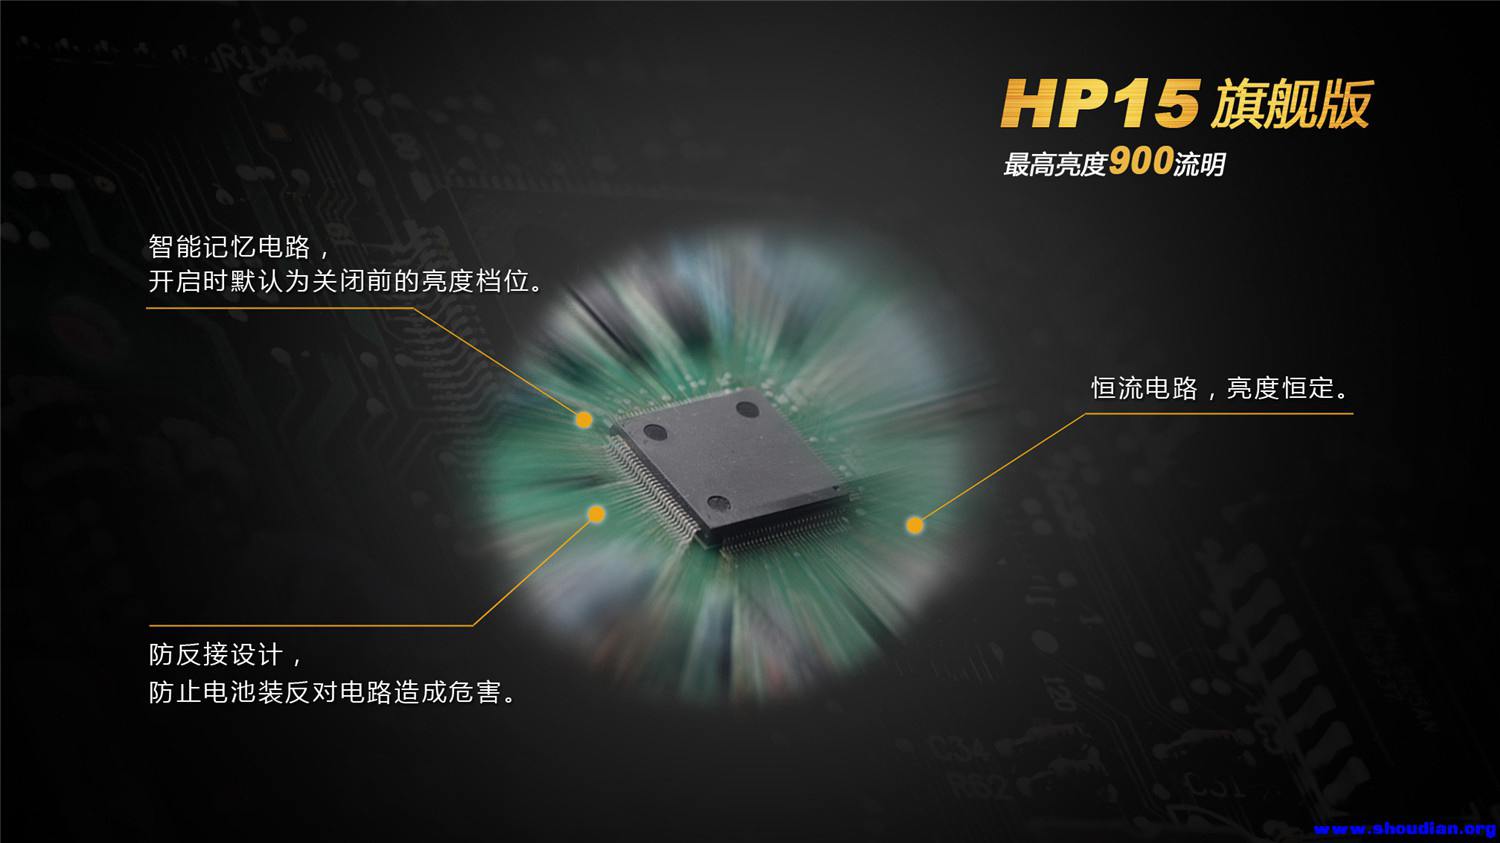 HP15-11.jpg